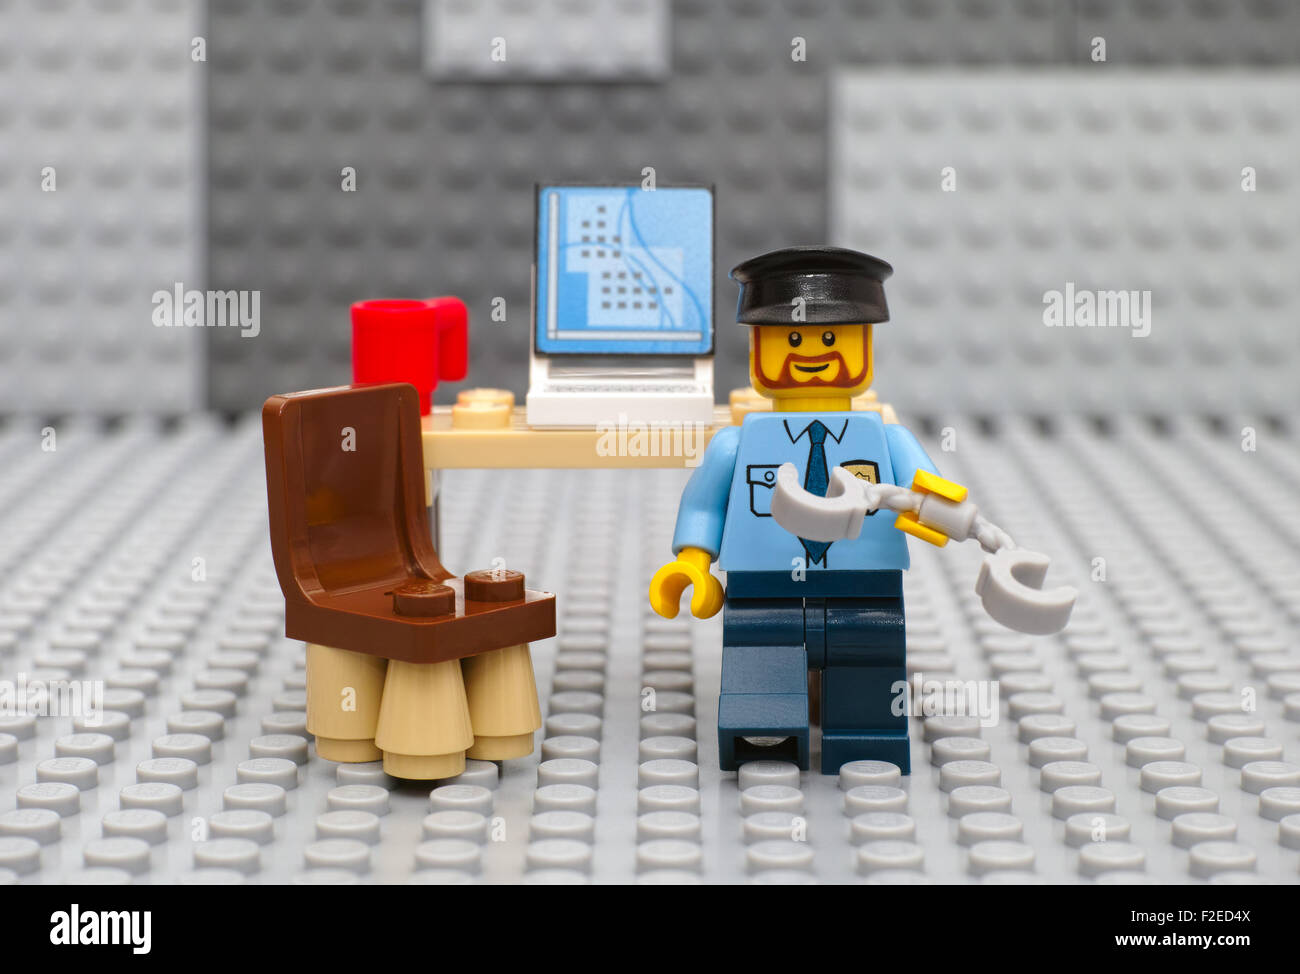 Policier Lego playmobil - 5116 - moto avec des menottes en arrestation de son lieu de travail avec ordinateur et tasse sur plaque gris Lego. Banque D'Images